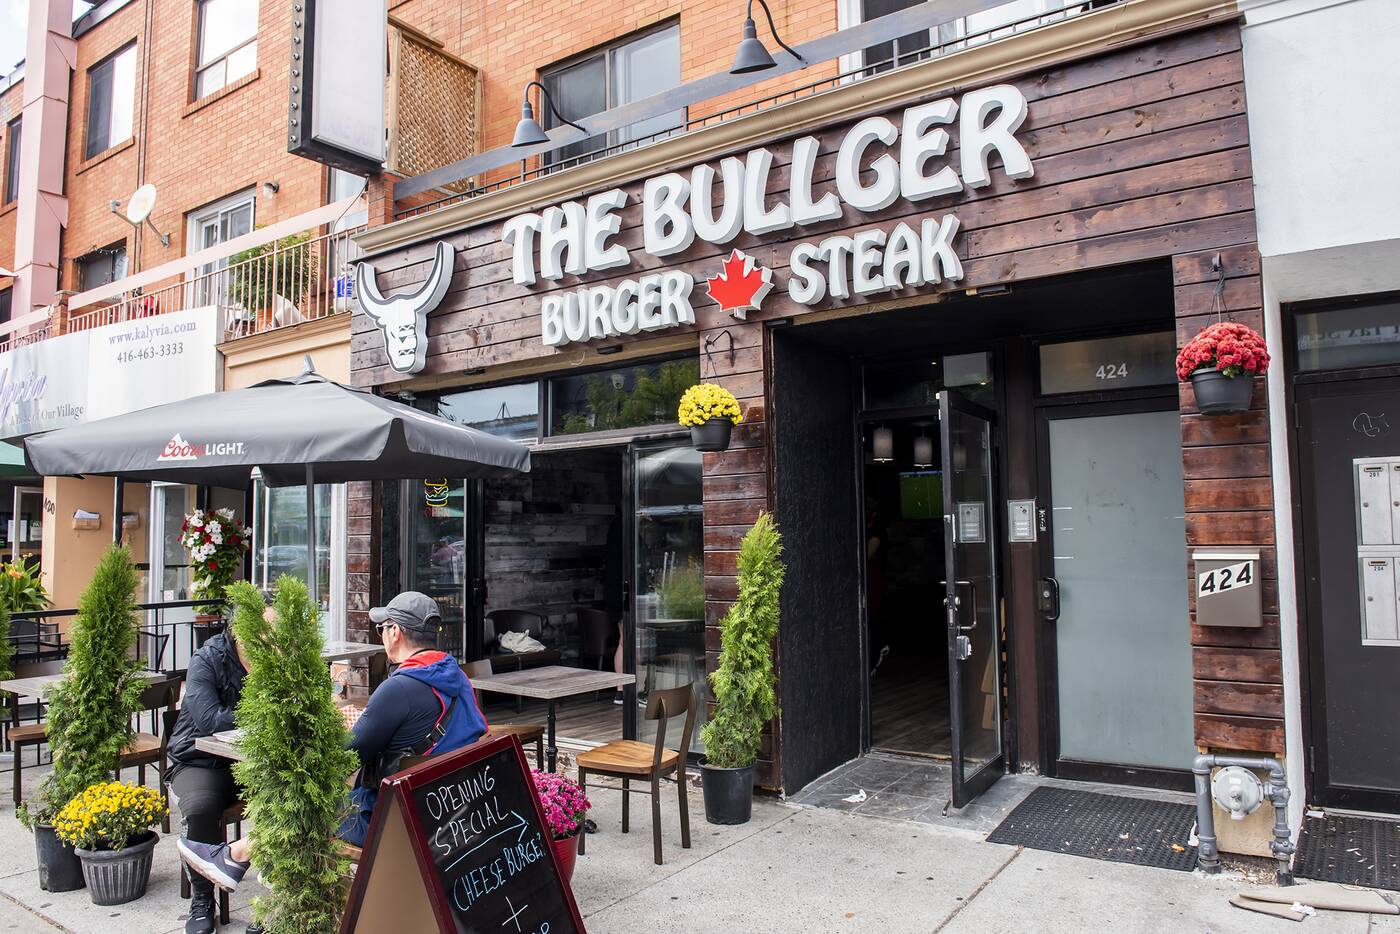 Bullger Toronto